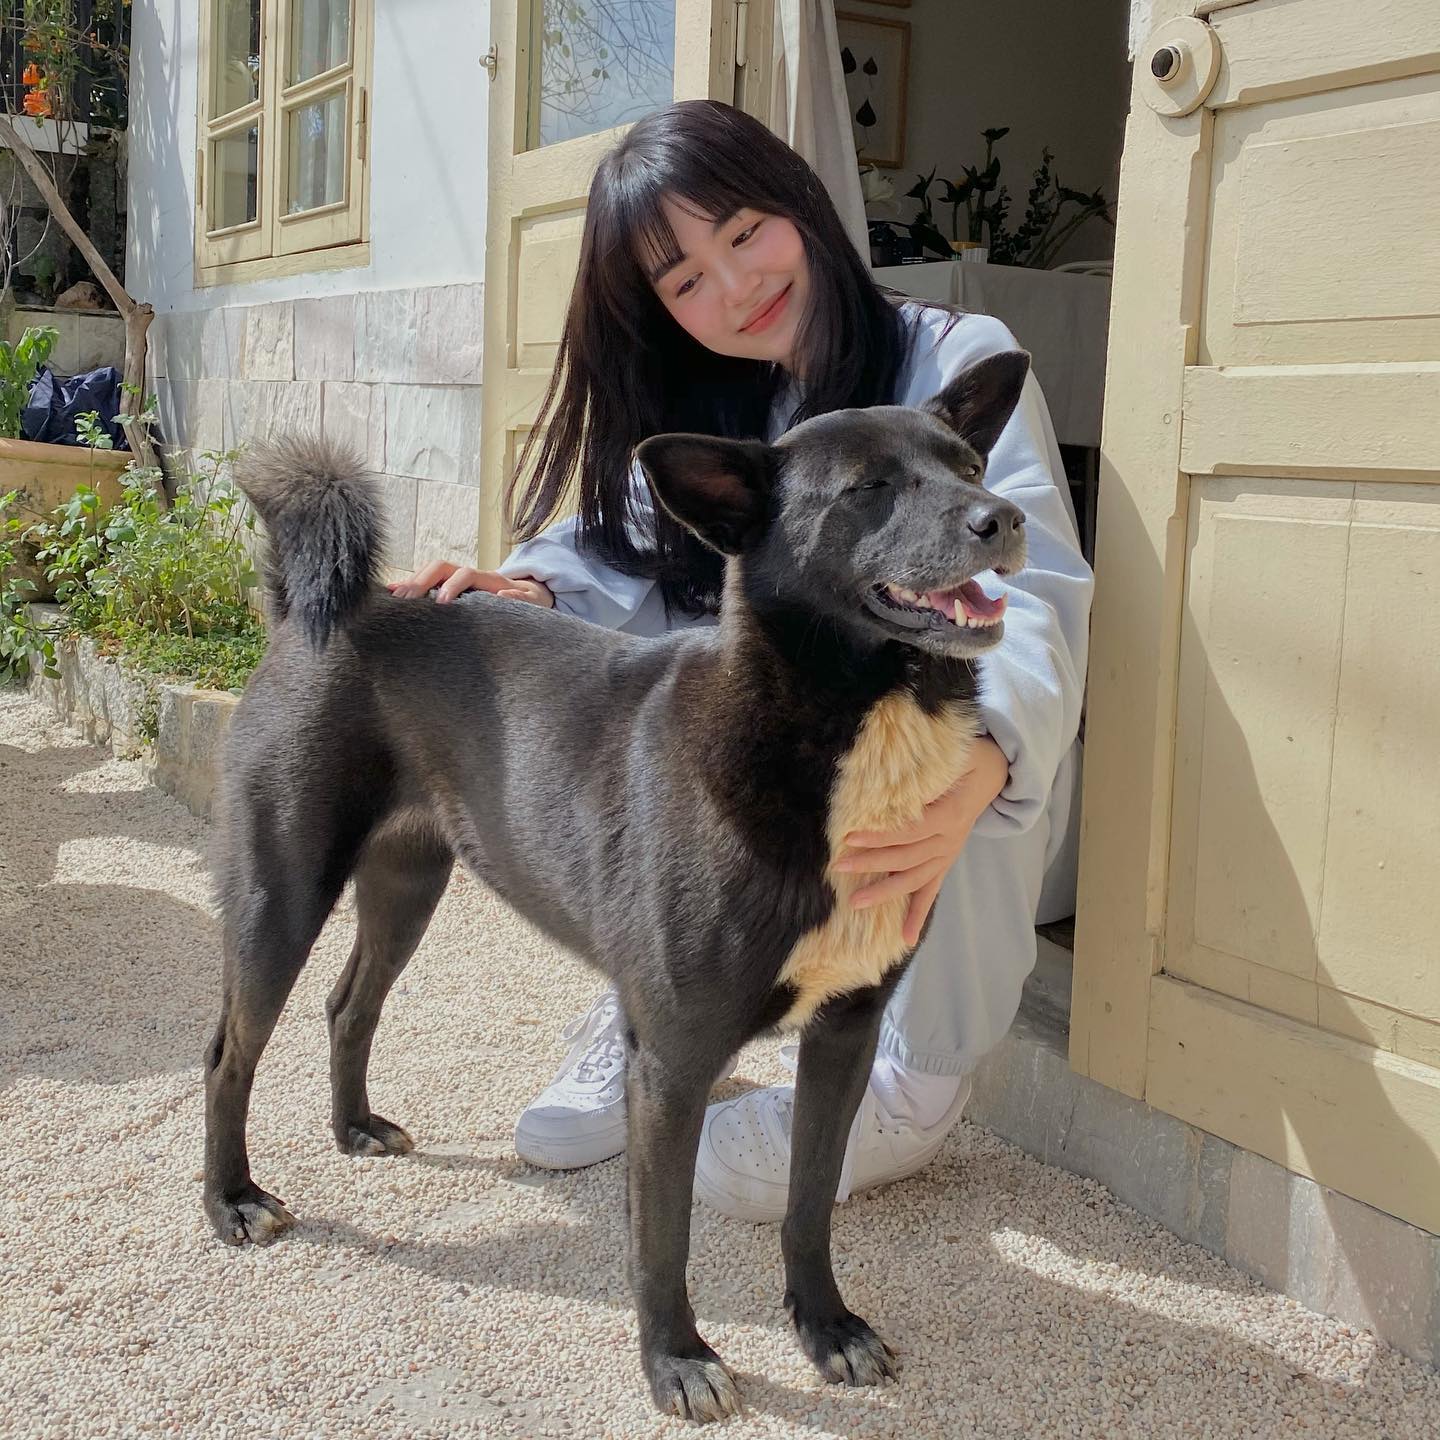 Hot girl Mẫn Tiên chia sẻ hình ảnh chơi đùa cùng cún cưng. Ở tuổi 25, cô vẫn giữ phong cách dễ thương, ngọt ngào nổi tiếng như thời 'bộ ba sát thủ'.